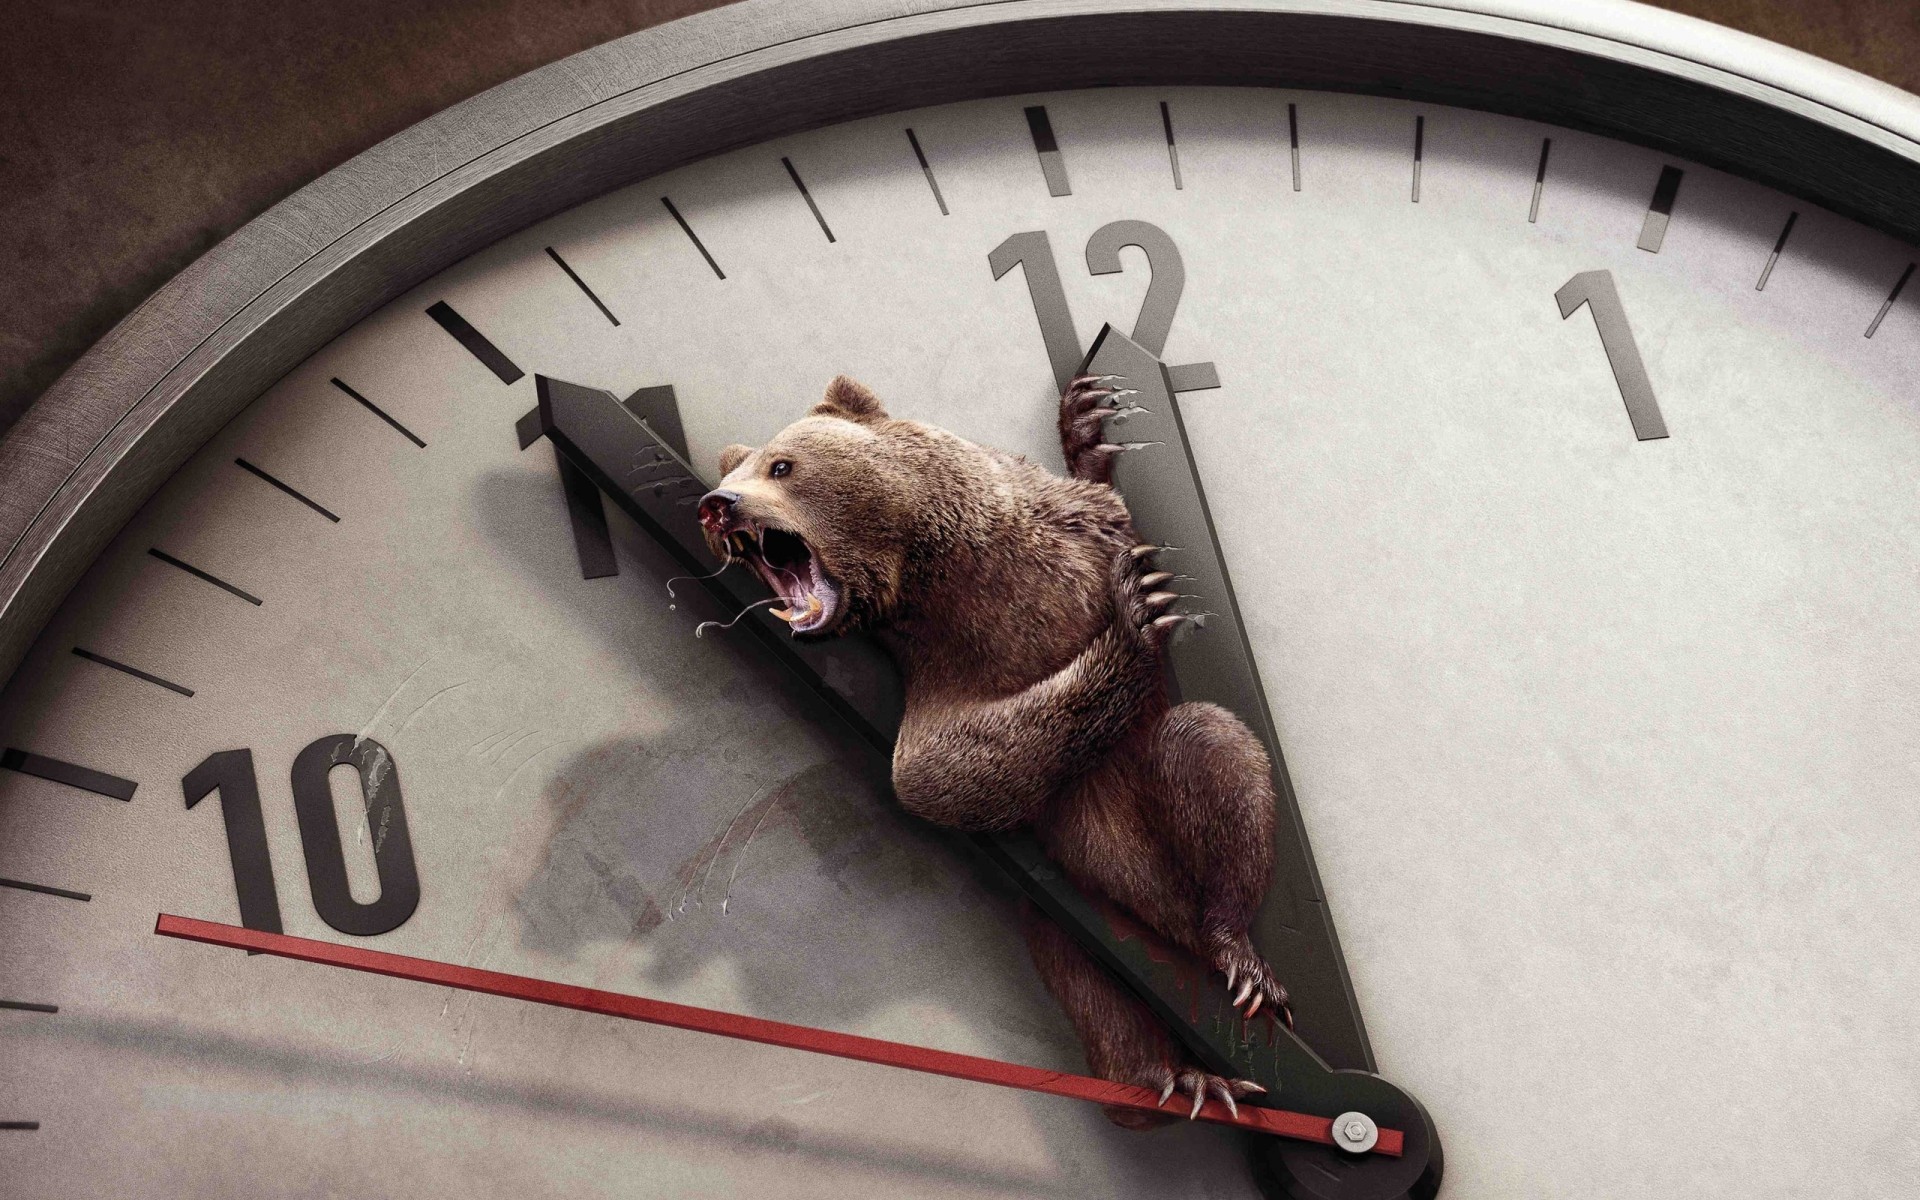 животные часы время минуту срок будильник смотреть поздно точность полночь таймер обратный отсчет количество раш полдень аналог бизнес гонки напоминание медведь